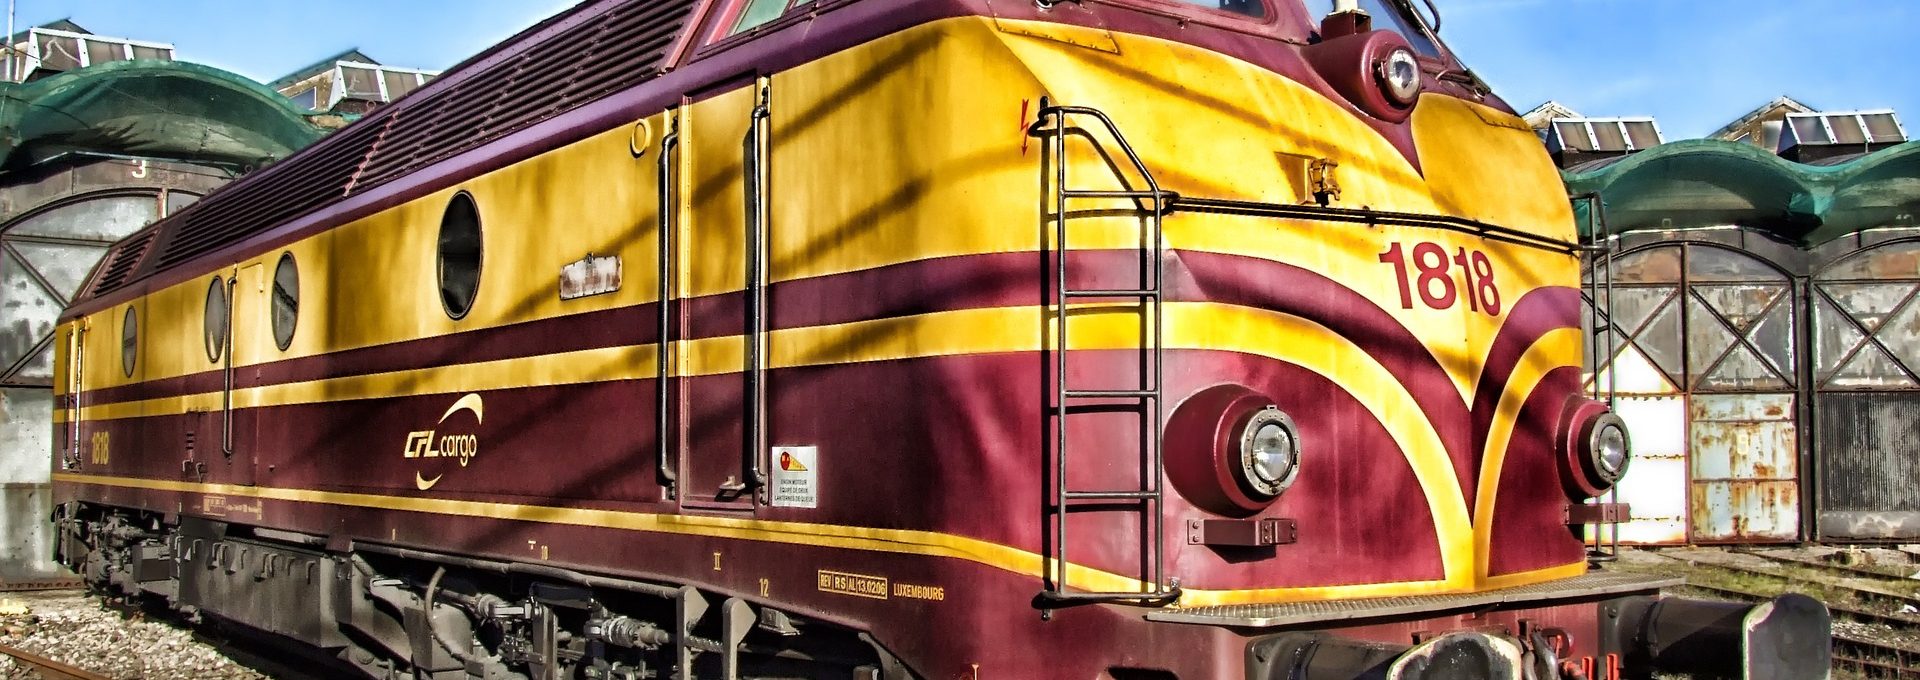 Comboio nas cores vermelho e amarelo numa estrada de ferro